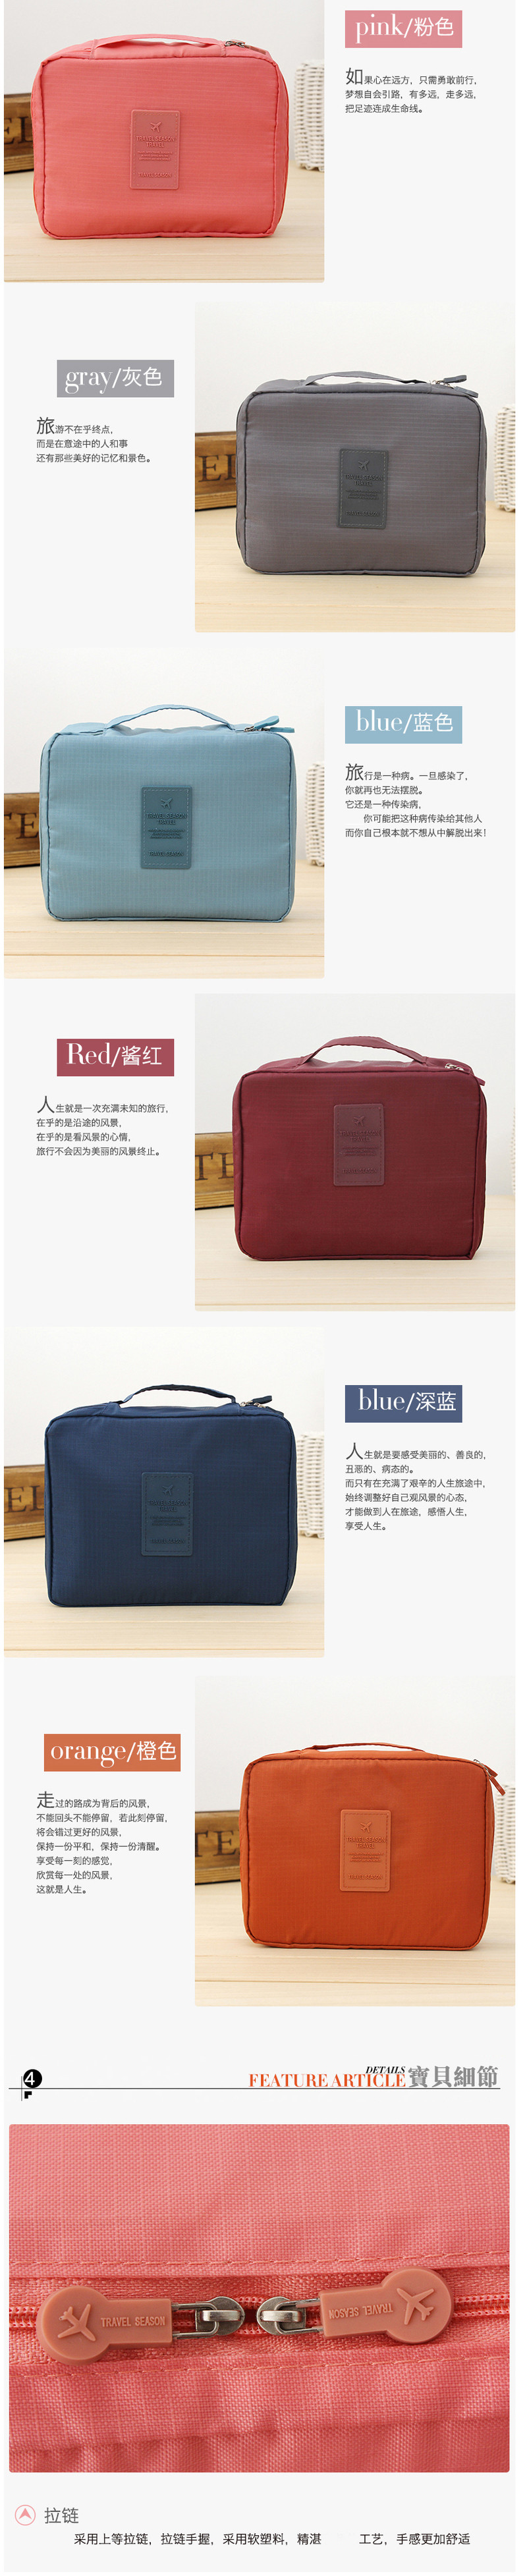 韩版方形旅行多功能内衣收纳包 旅行包 便携洗漱包